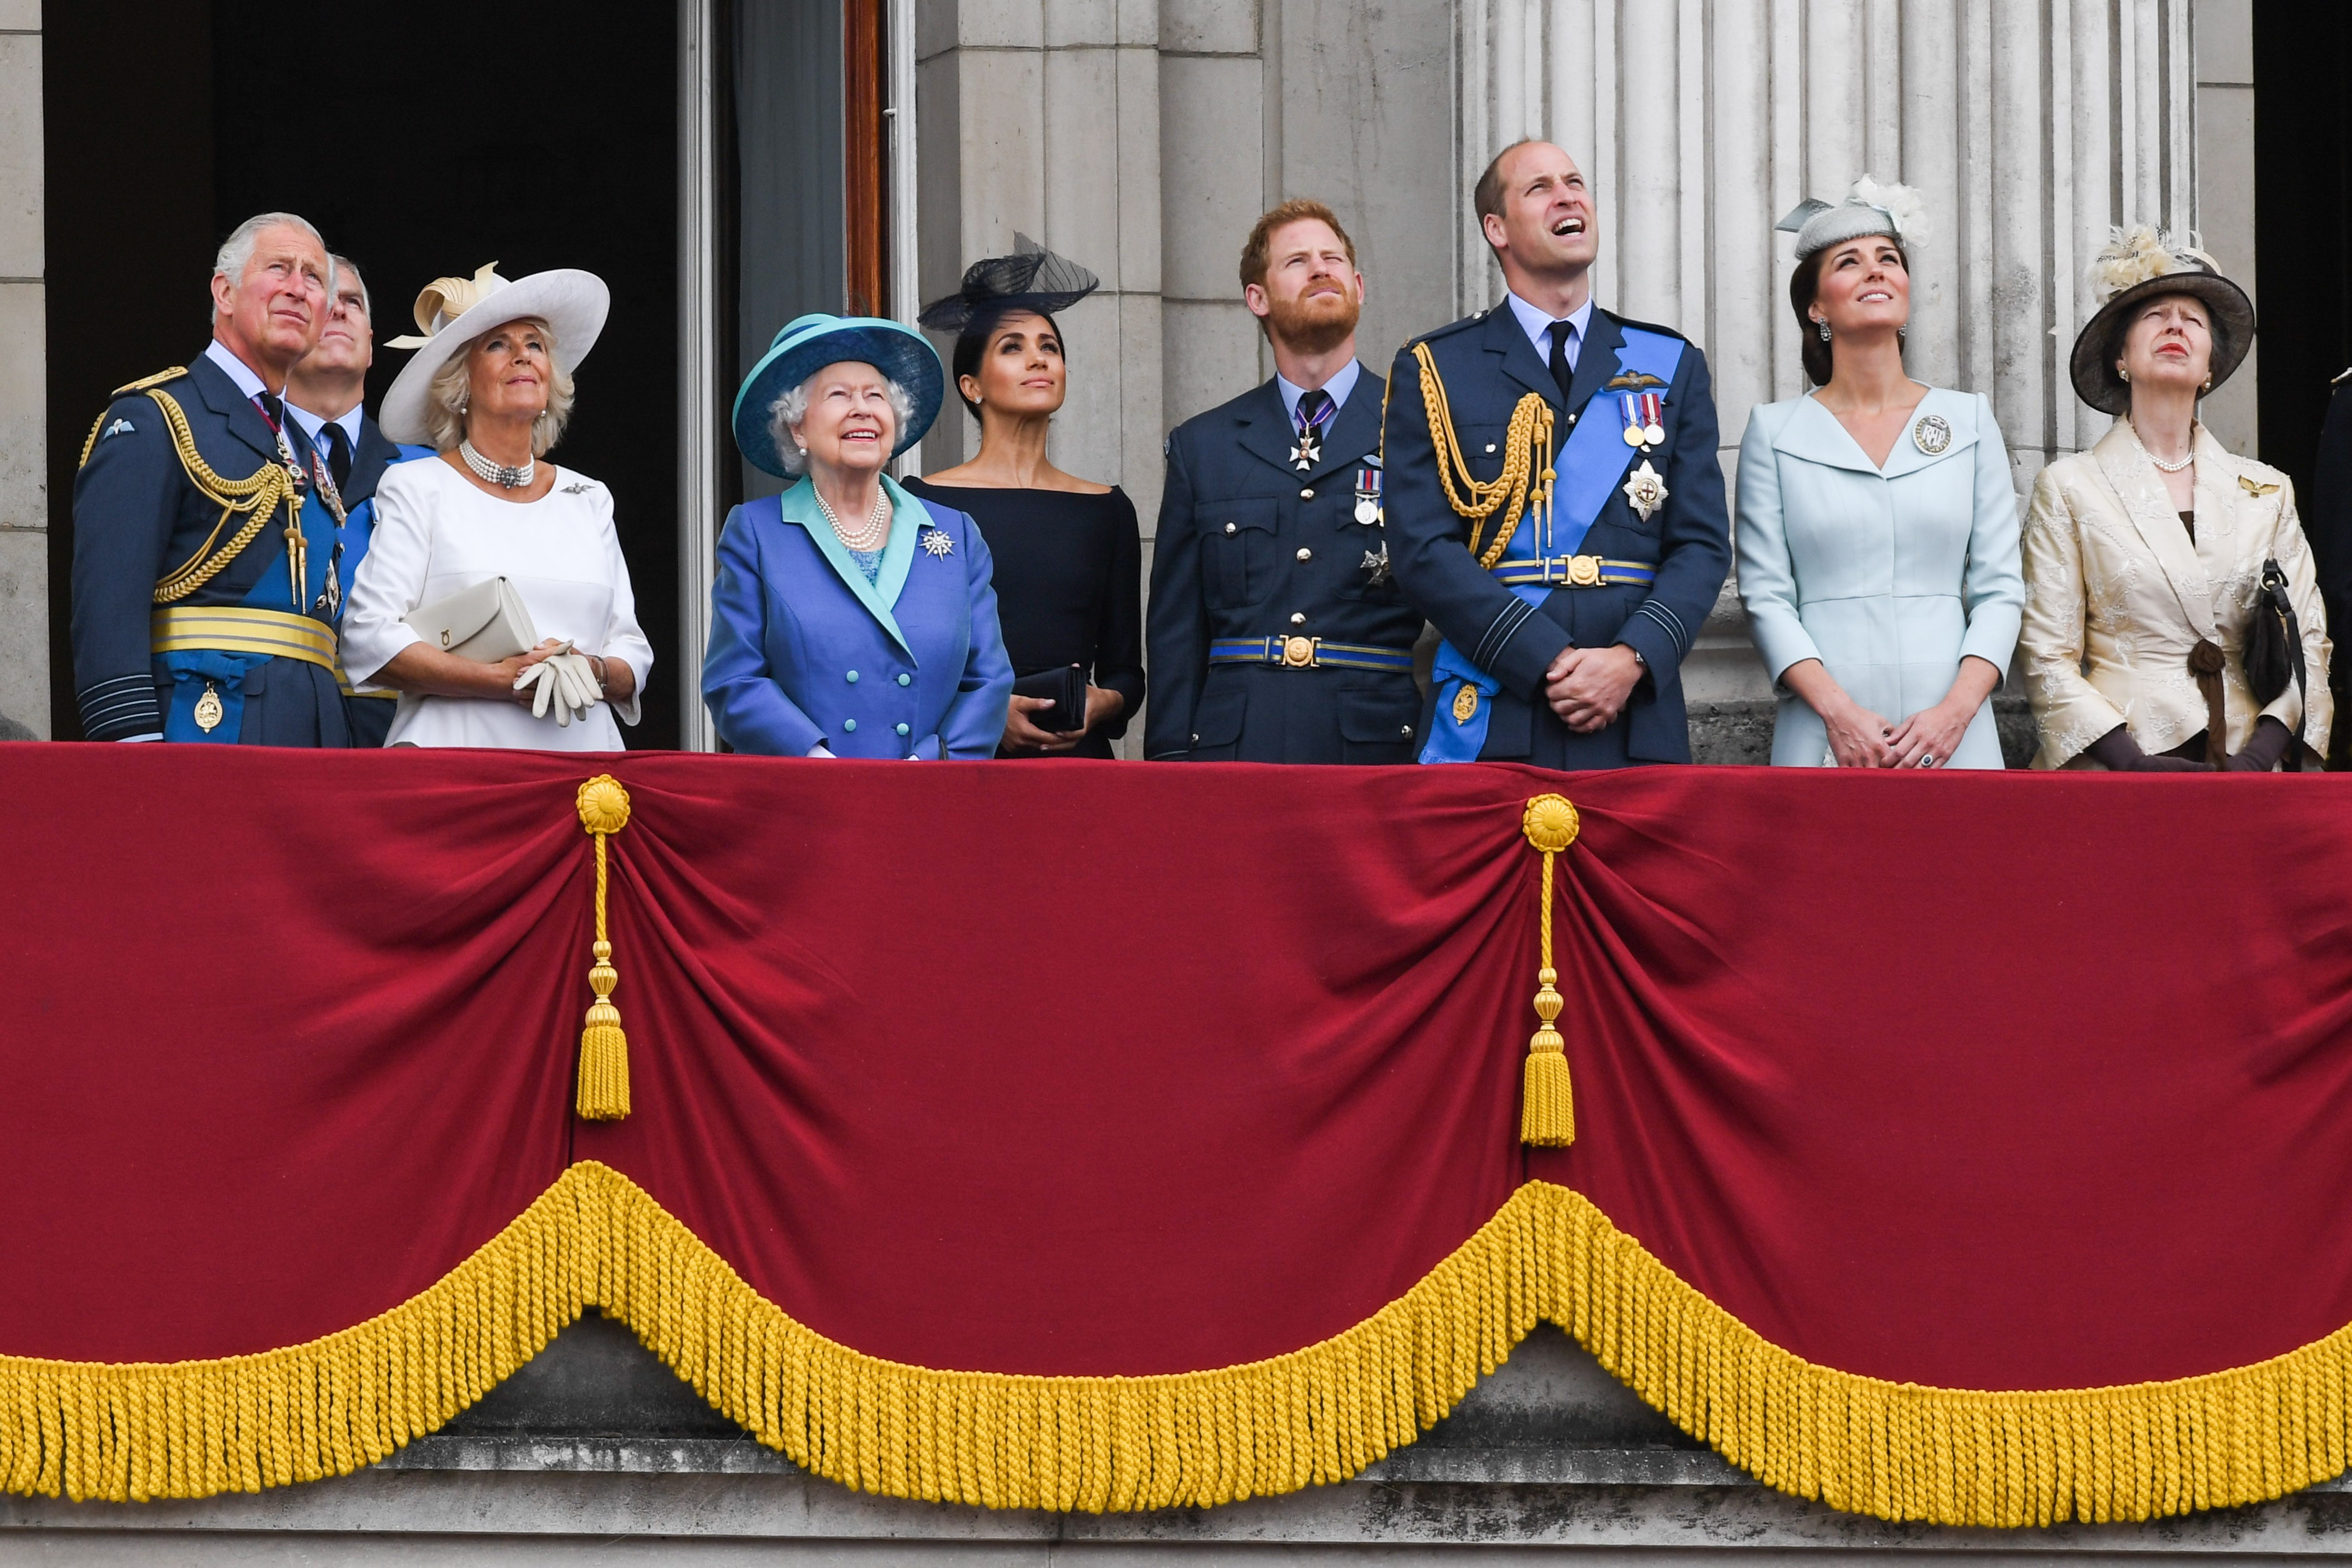 O Príncipe Harry e a atriz e duquesa Meghan Markle em evento na companhia da Rainha Elizabeth 2ª, do Príncipe Charles, do Príncipe William, da duquesa Kate Middleton e de outros membros da Família Real Britânica (Foto: Getty Images)